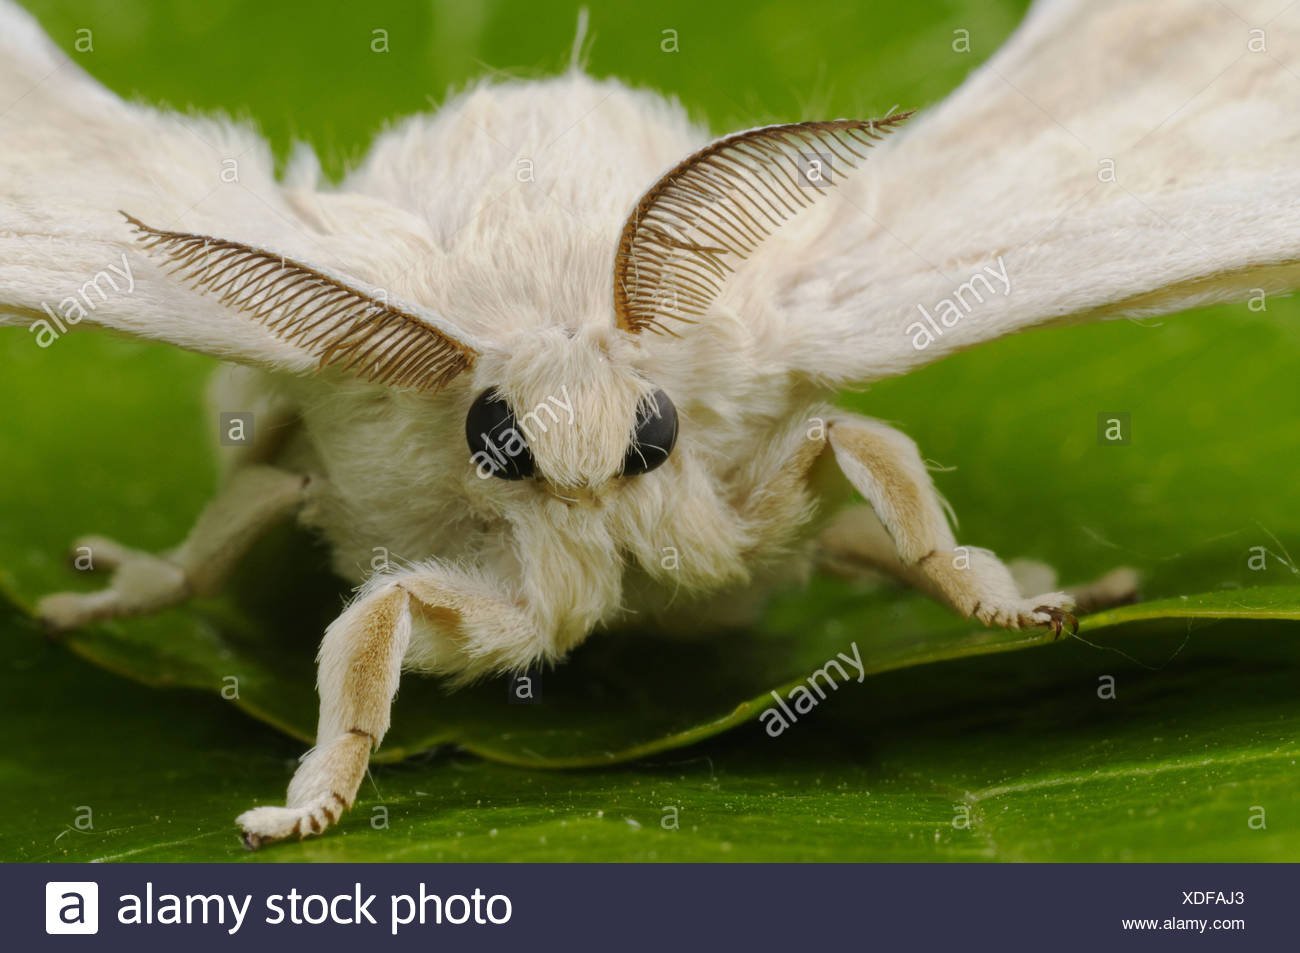 Тутов шелкопряд фото. Венесуэльский пуделевый мотылек. Венесуэльский пуделевый мотылек тутовый шелкопряд. Тутовый шелкопряд бабочка. Венесуэльский пуделевый мотылек гусеница.